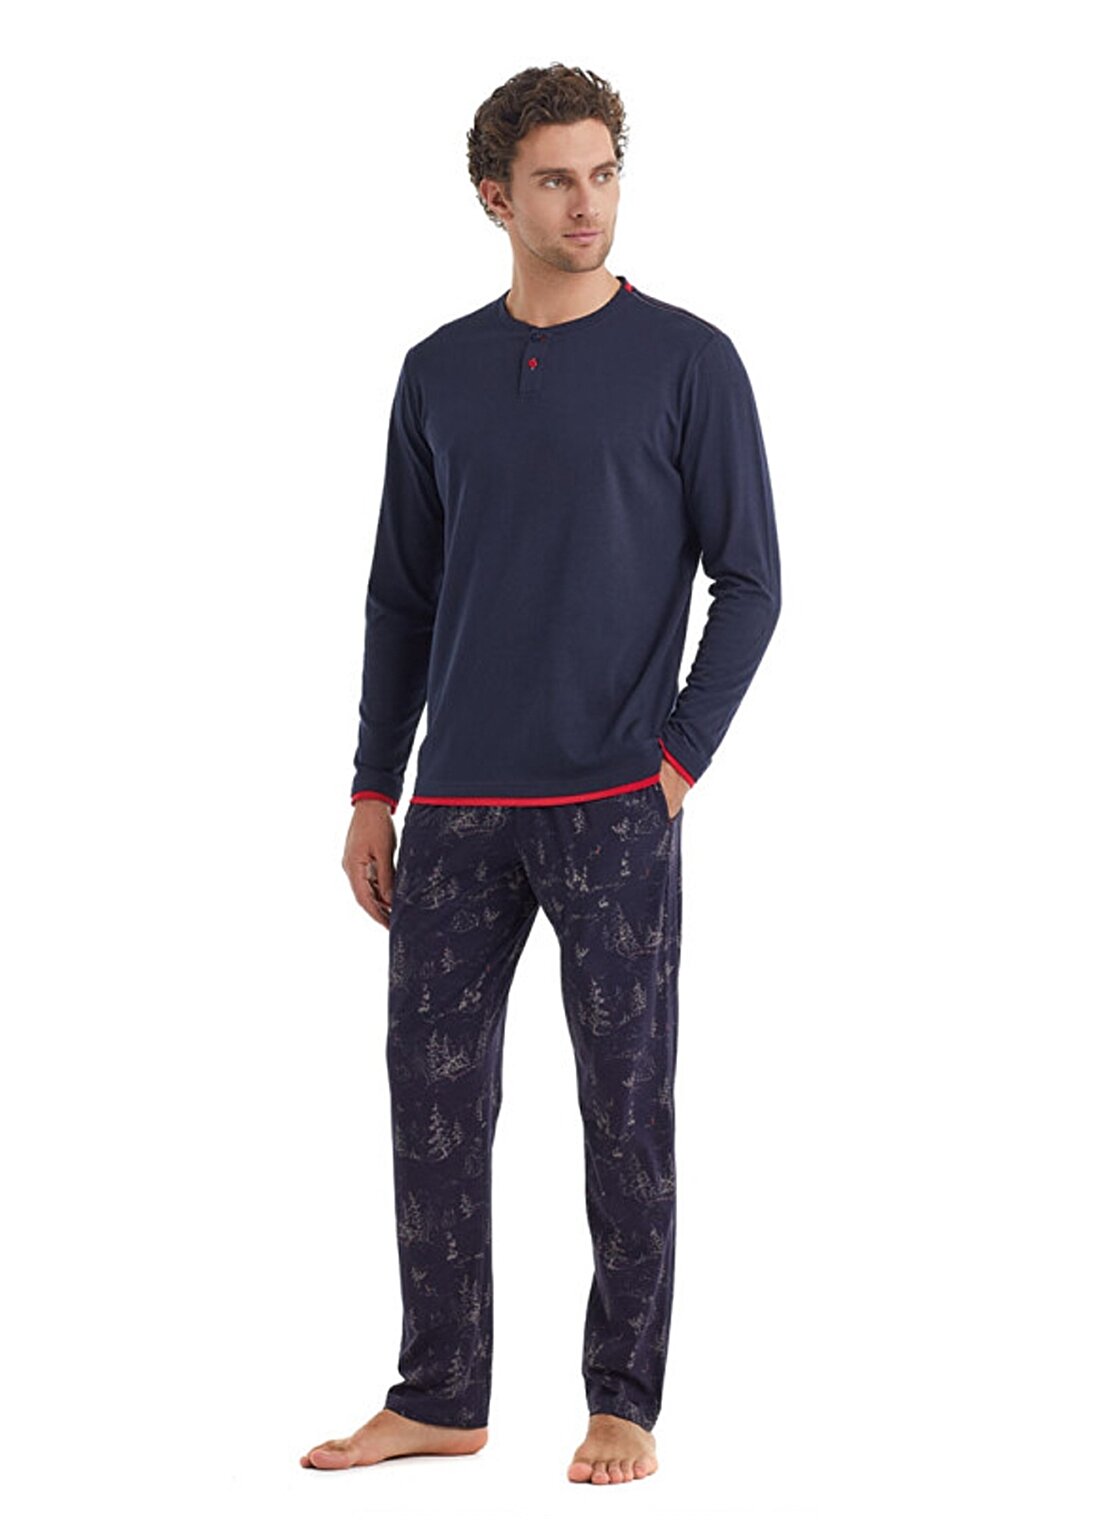 Blackspade Lacivert Erkek Düğmeli Düz Pijama Takımı 40106